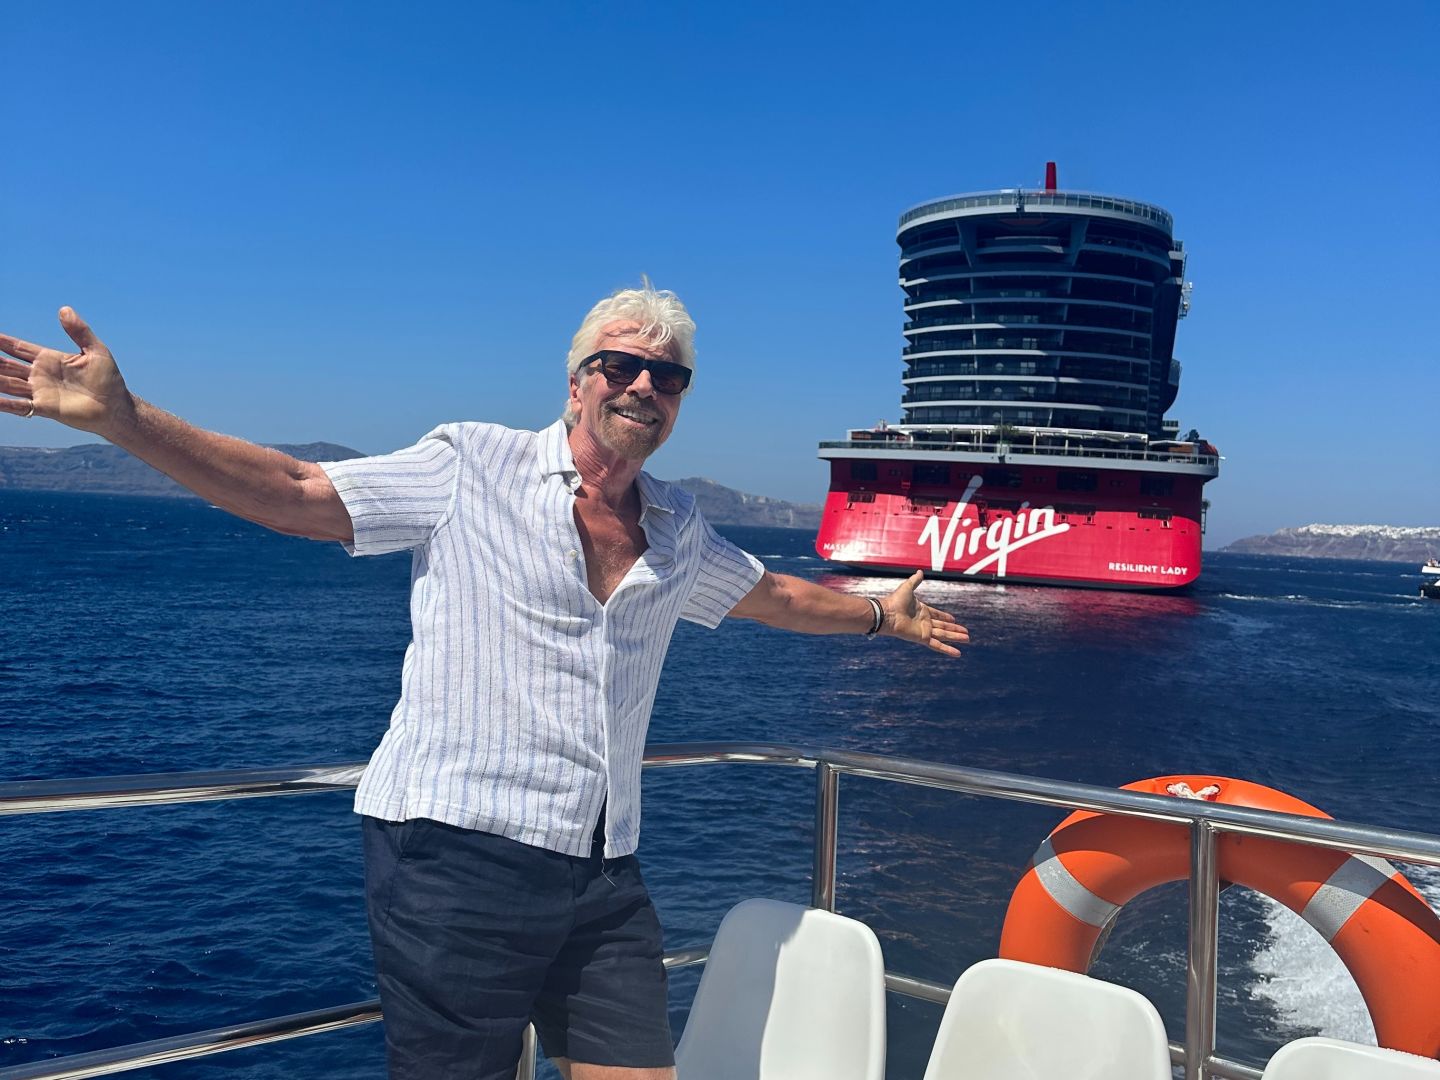 Richard Branson Interview - Richard Branson Virgin Voyages Cruise Line